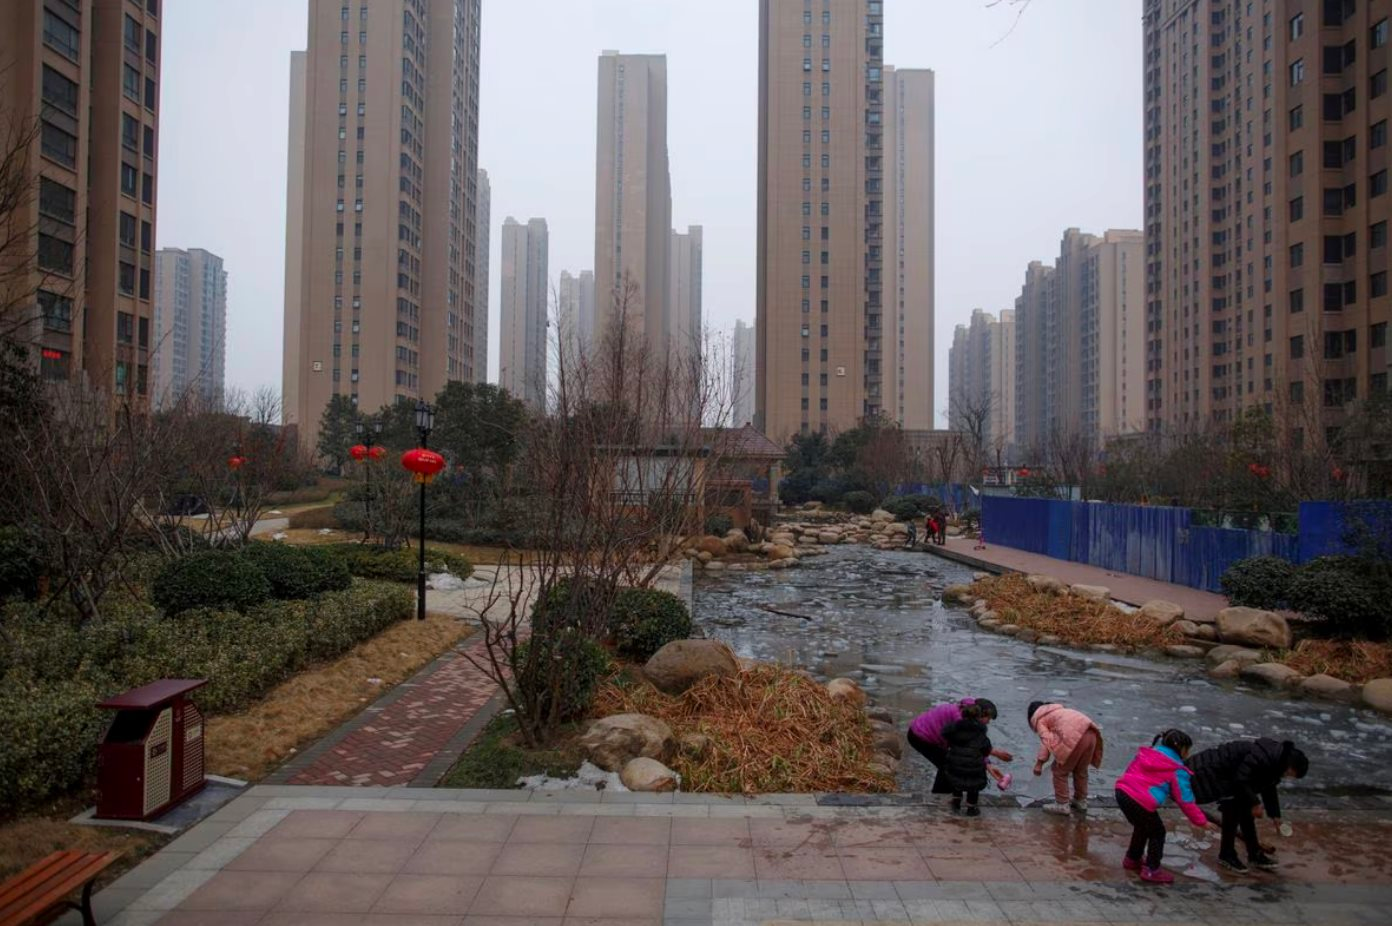 'Nhà rẻ như rau': Hơn 10 căn hộ giá chỉ 730 triệu đồng, dân Trung Quốc cầm tiền mua bất động sản không khác gì 'đi chợ' - Ảnh 2.